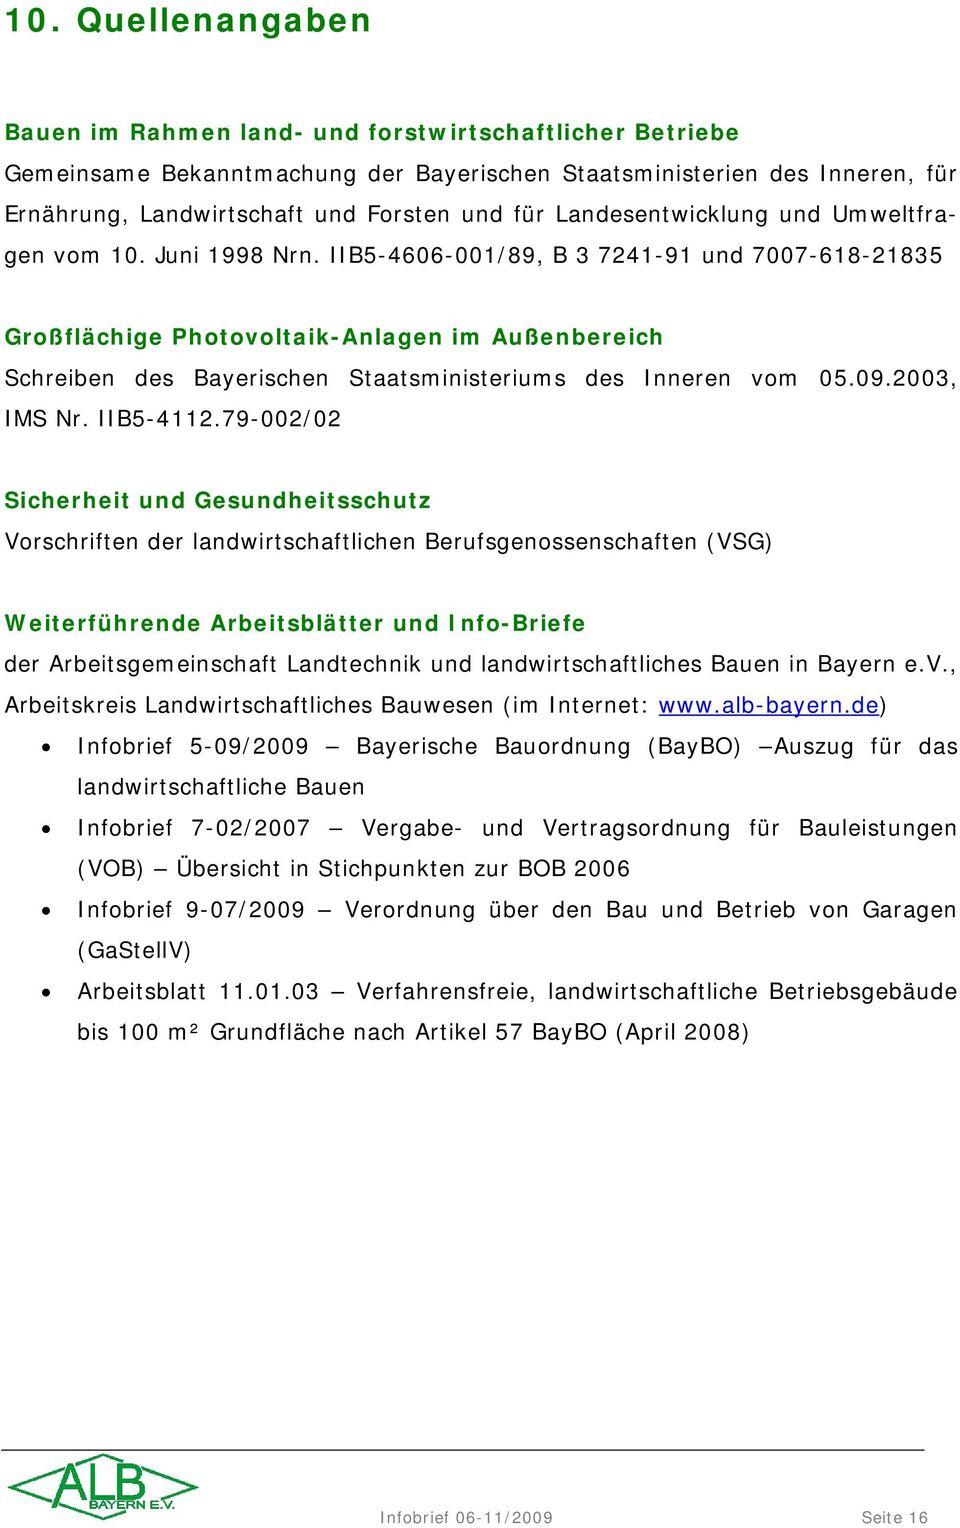 IIB5-4606-001/89, B 3 7241-91 und 7007-618-21835 Großflächige Photovoltaik-Anlagen im Außenbereich Schreiben des Bayerischen Staatsministeriums des Inneren vom 05.09.2003, IMS Nr. IIB5-4112.